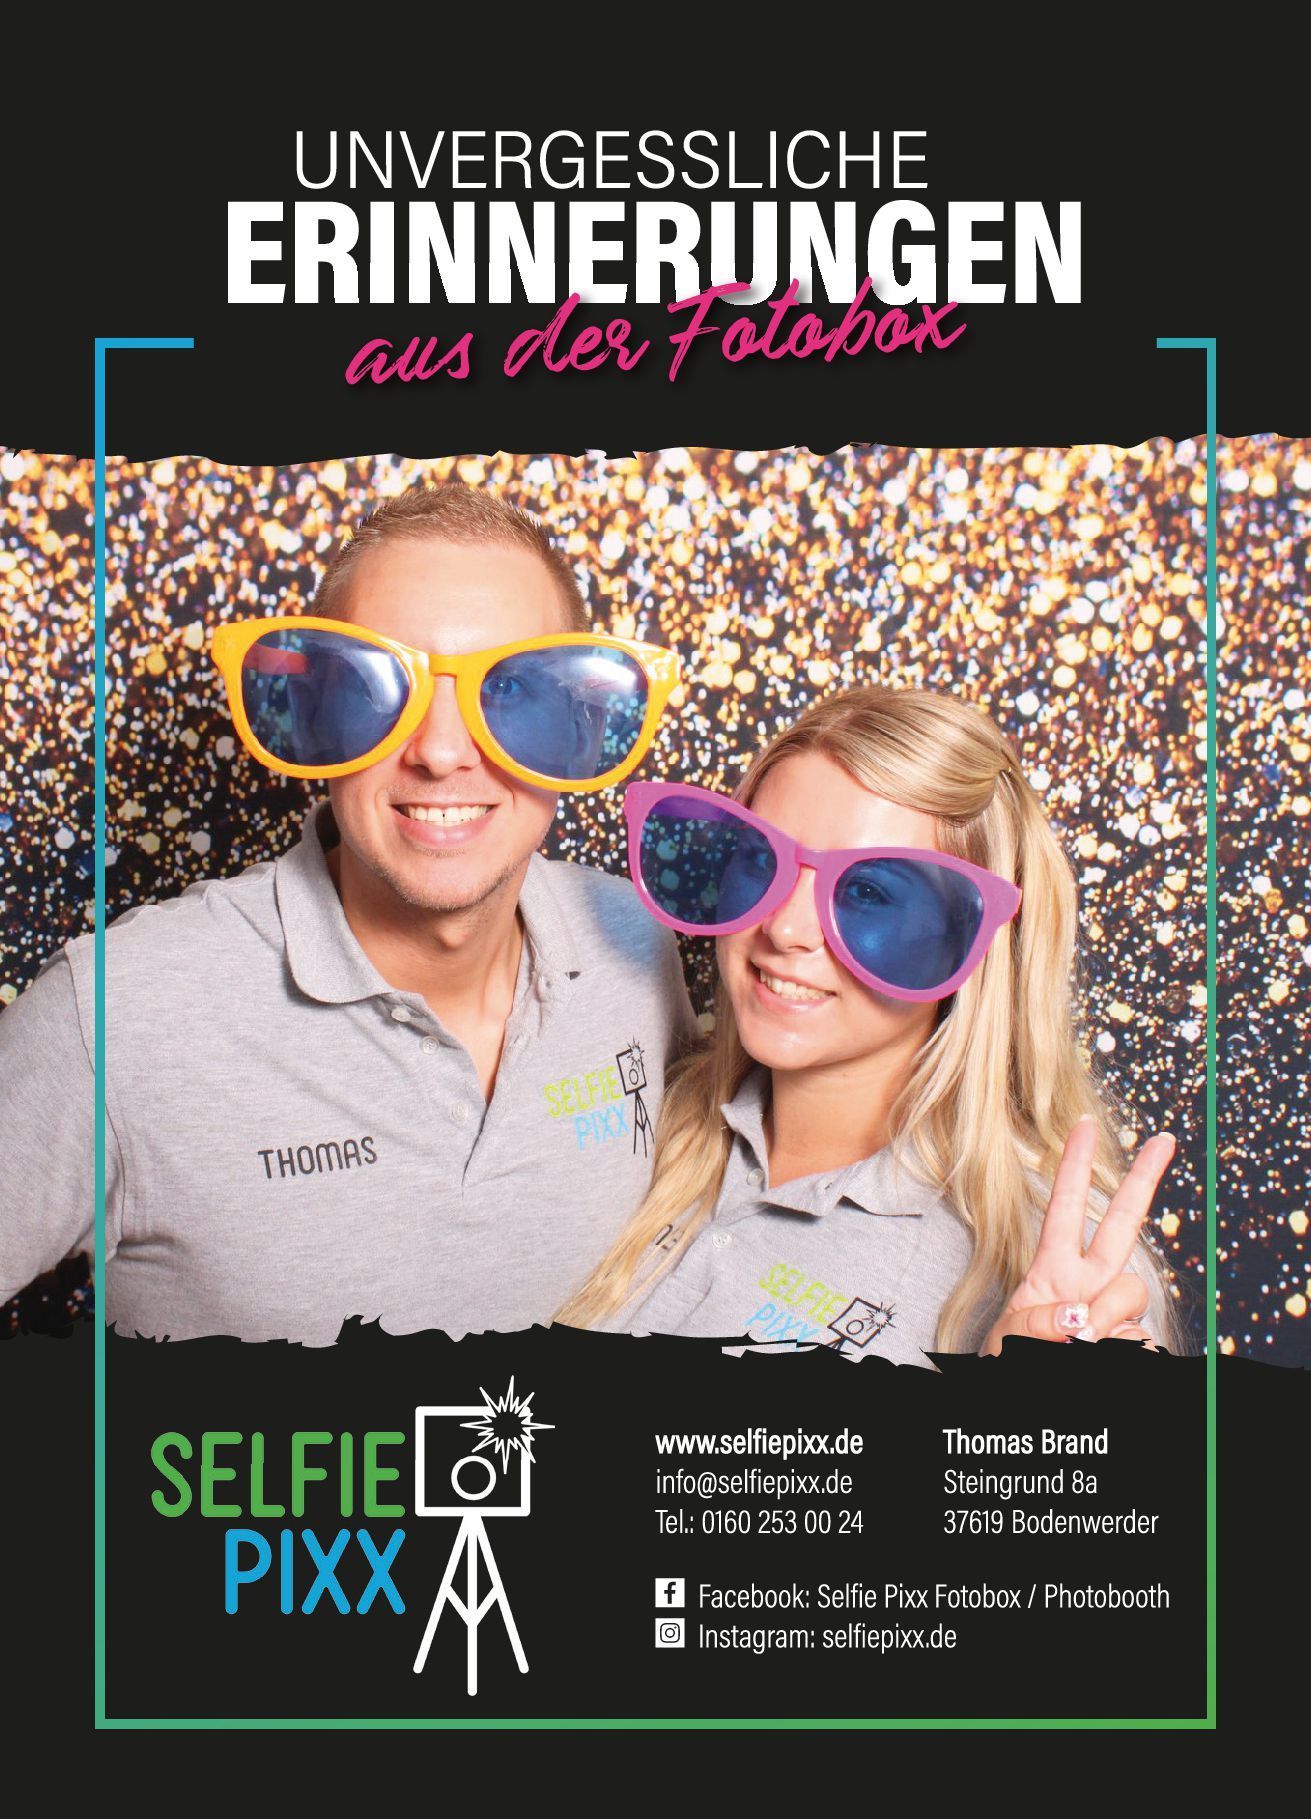 Selfie Pixx Fotobox mieten für deine Veranstaltung Hochzeit Geburtstag Firmenveranstaltung